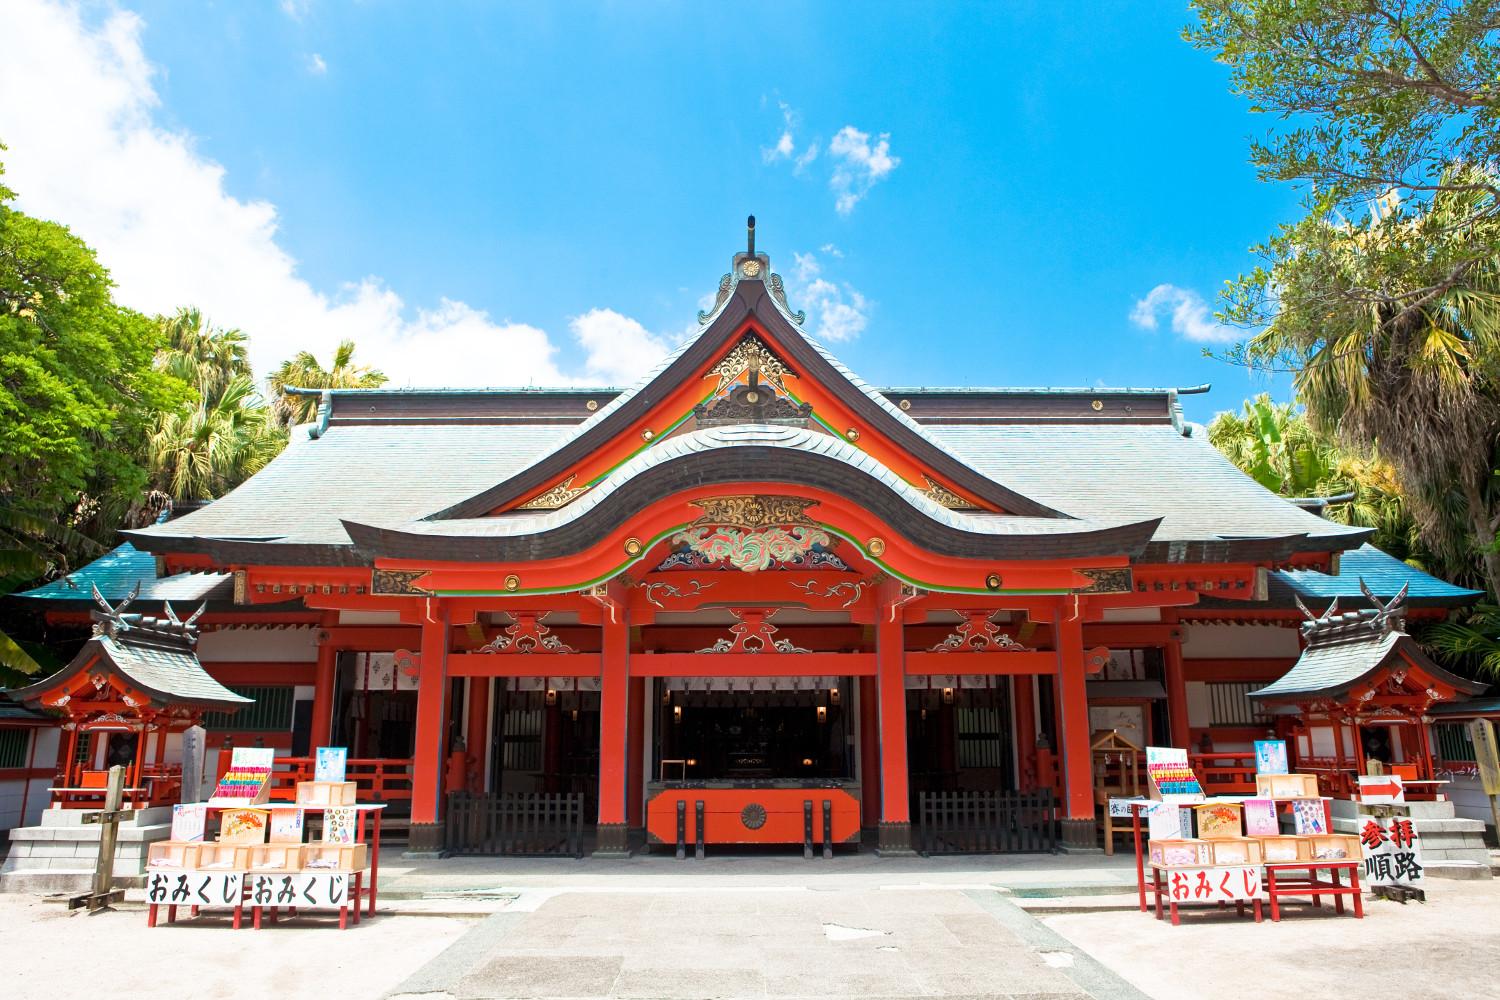  【3日目】青島神社 